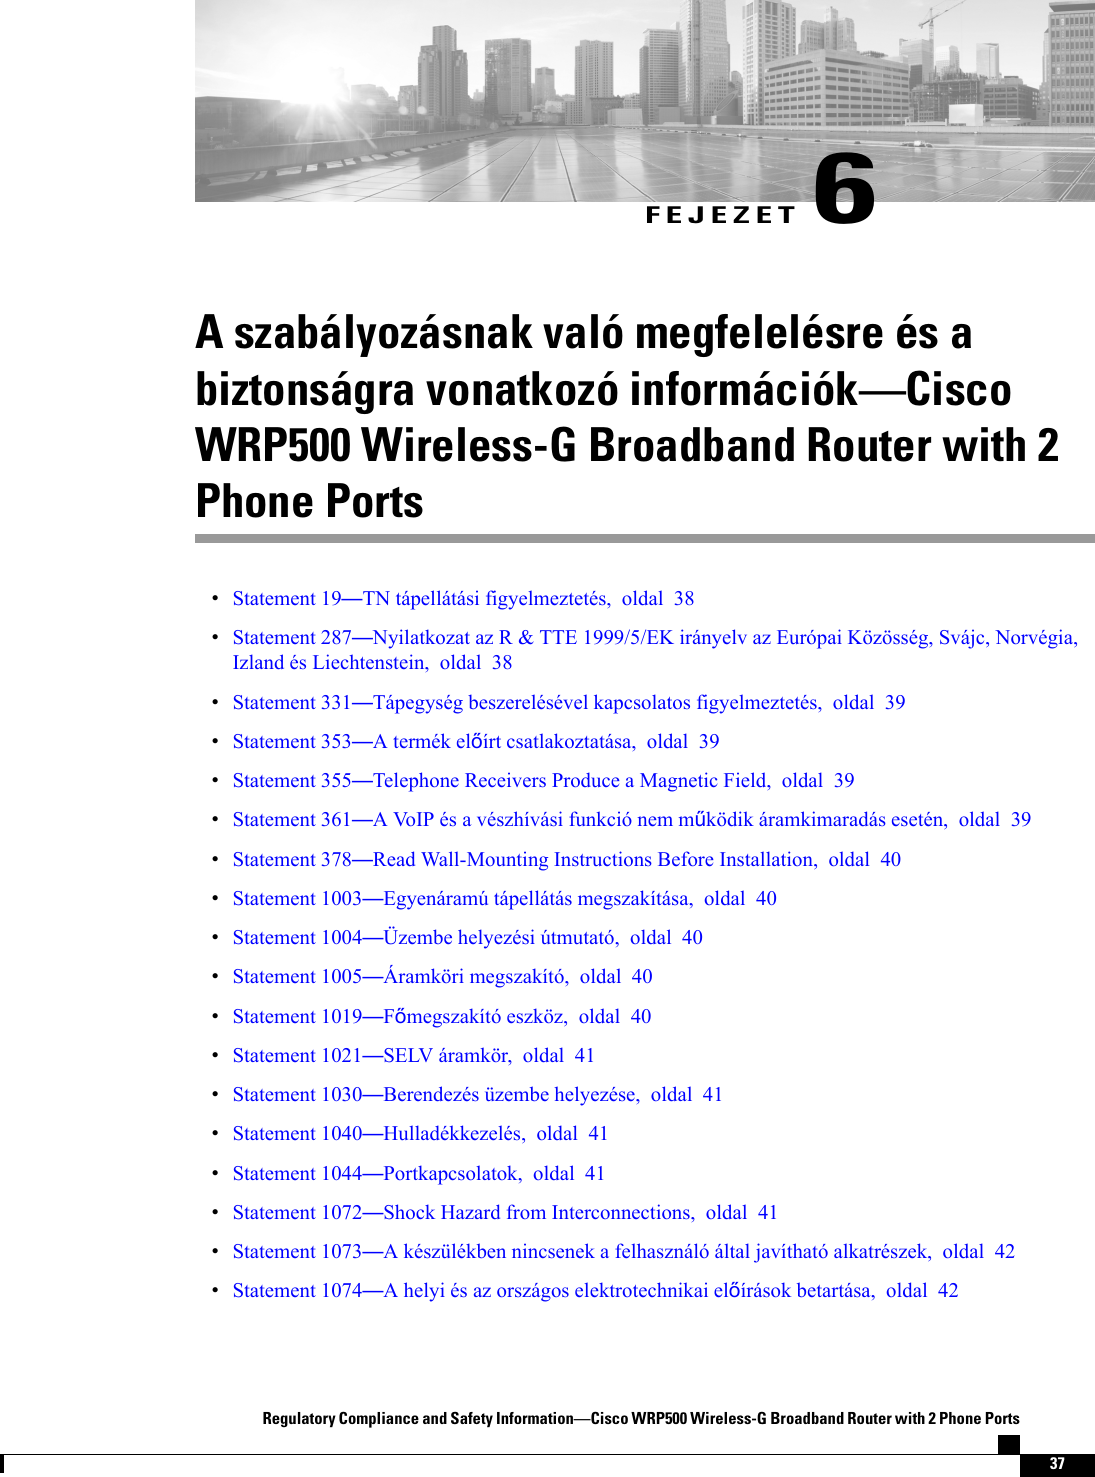 FEJEZET 6A szabályozásnak való megfelelésre és abiztonságra vonatkozó információkCiscoWRP500 Wireless-G Broadband Router with 2Phone PortsStatement 19TN tápellátási figyelmeztetés, oldal 38Statement 287Nyilatkozat az R &amp; TTE 1999/5/EK irányelv az Európai Közösség, Svájc, Norvégia,Izland és Liechtenstein, oldal 38Statement 331Tápegység beszerelésével kapcsolatos figyelmeztetés, oldal 39Statement 353A termék elírt csatlakoztatása, oldal 39Statement 355Telephone Receivers Produce a Magnetic Field, oldal 39Statement 361A VoIP és a vészhívási funkció nem mködik áramkimaradás esetén, oldal 39Statement 378Read Wall-Mounting Instructions Before Installation, oldal 40Statement 1003Egyenáramú tápellátás megszakítása, oldal 40Statement 1004Üzembe helyezési útmutató, oldal 40Statement 1005Áramköri megszakító, oldal 40Statement 1019Fmegszakító eszköz, oldal 40Statement 1021SELV áramkör, oldal 41Statement 1030Berendezés üzembe helyezése, oldal 41Statement 1040Hulladékkezelés, oldal 41Statement 1044Portkapcsolatok, oldal 41Statement 1072Shock Hazard from Interconnections, oldal 41Statement 1073A készülékben nincsenek a felhasználó által javítható alkatrészek, oldal 42Statement 1074A helyi és az országos elektrotechnikai elírások betartása, oldal 42Regulatory Compliance and Safety InformationCisco WRP500 Wireless-G Broadband Router with 2 Phone Ports37